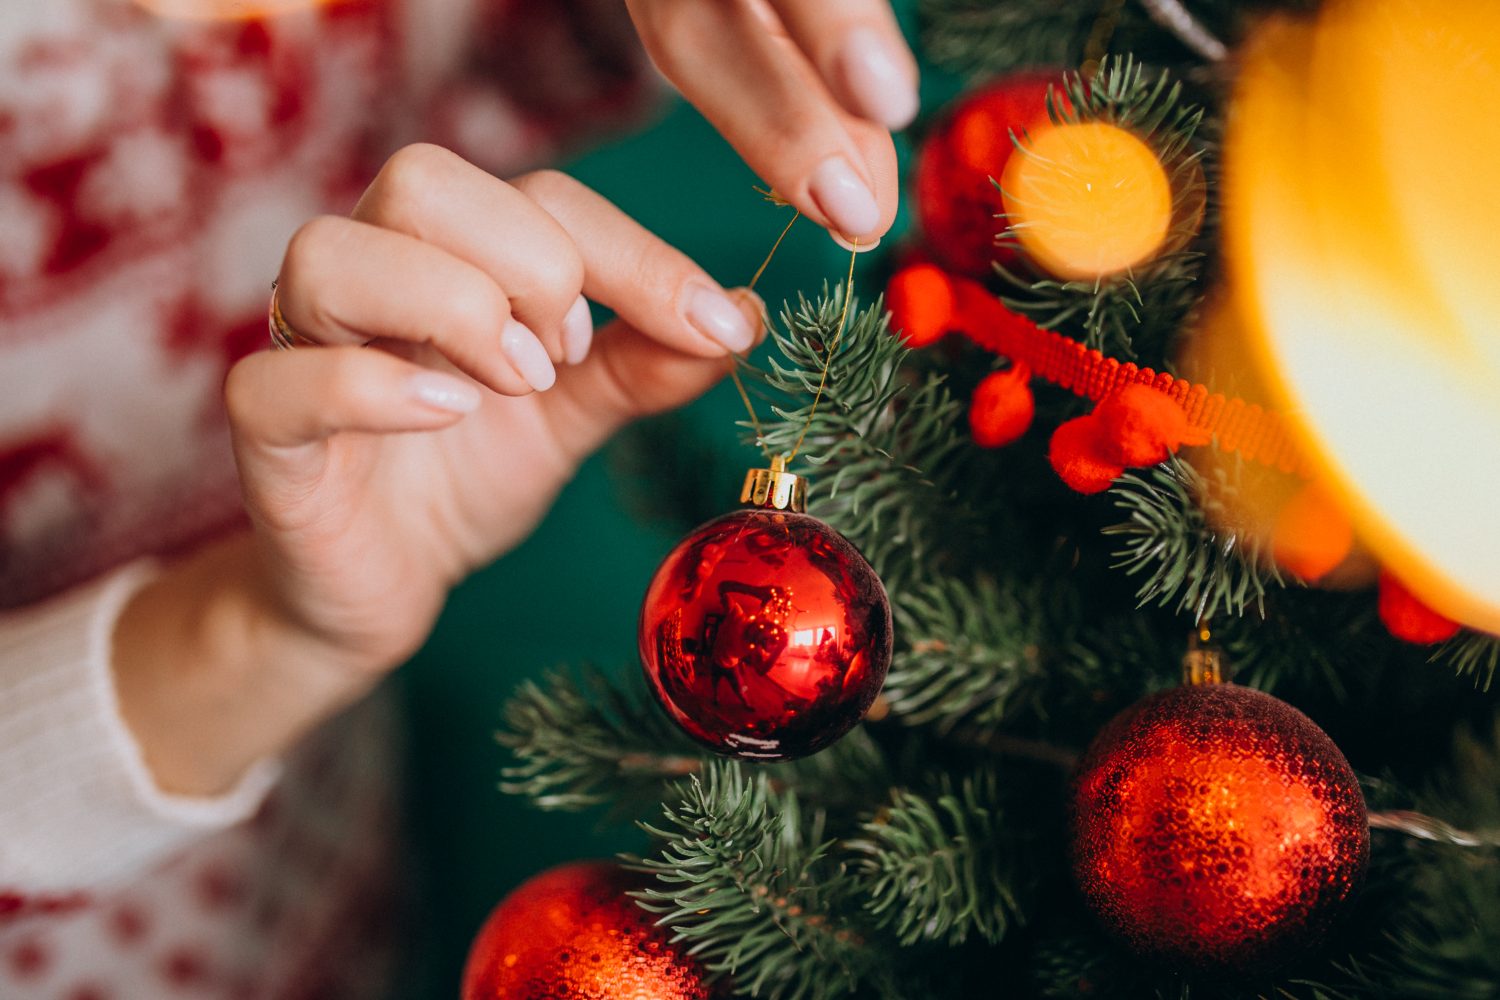 decorando el árbol de navidad con bolas rojas / navideña